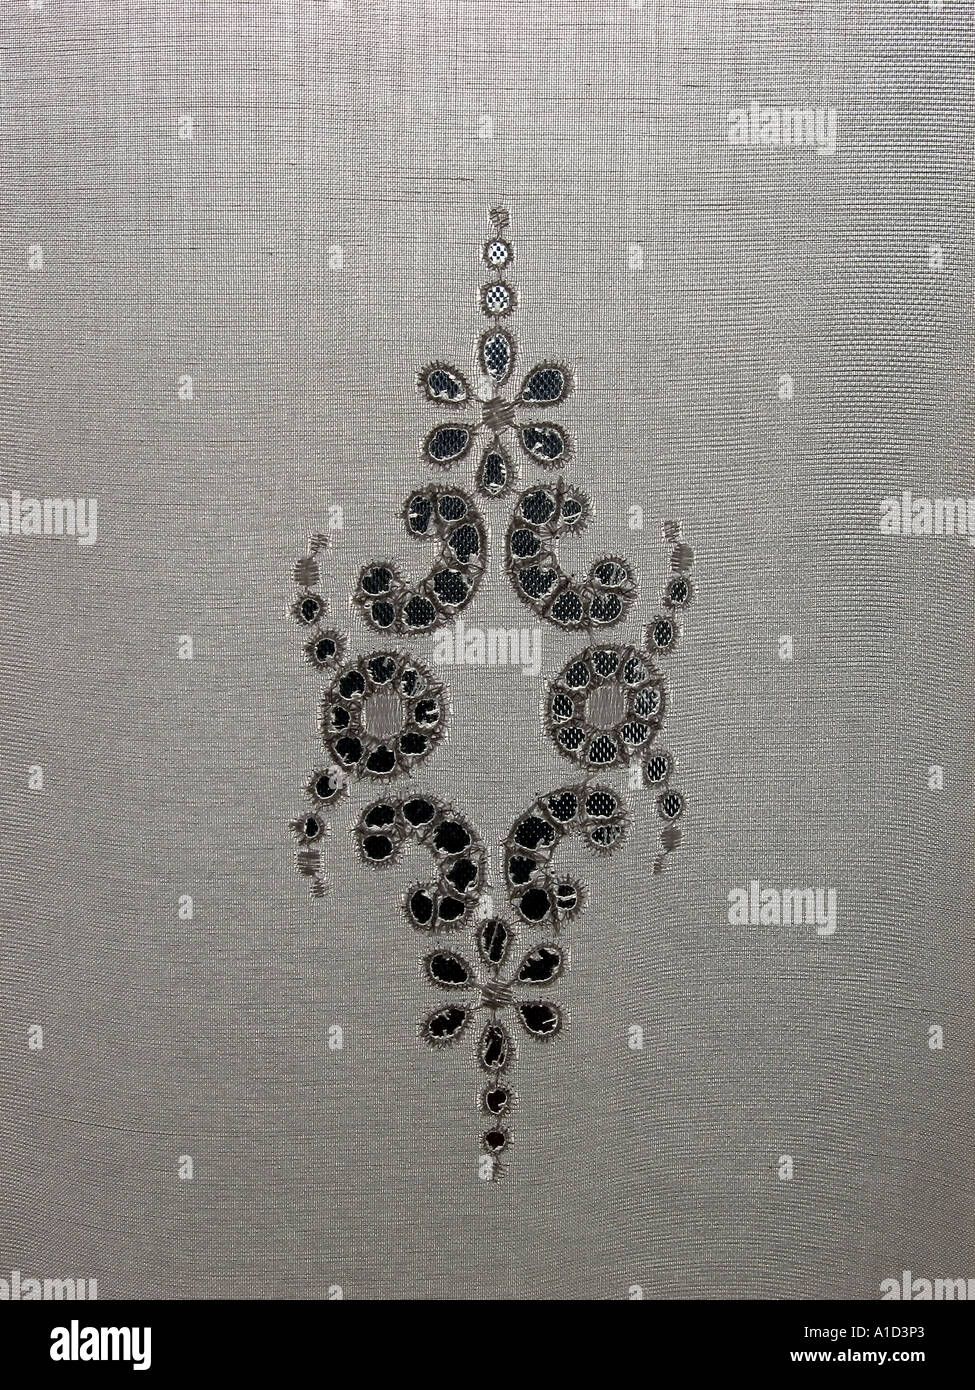 Motif symétrique brodé sur un morceau de tissu blanc Banque D'Images